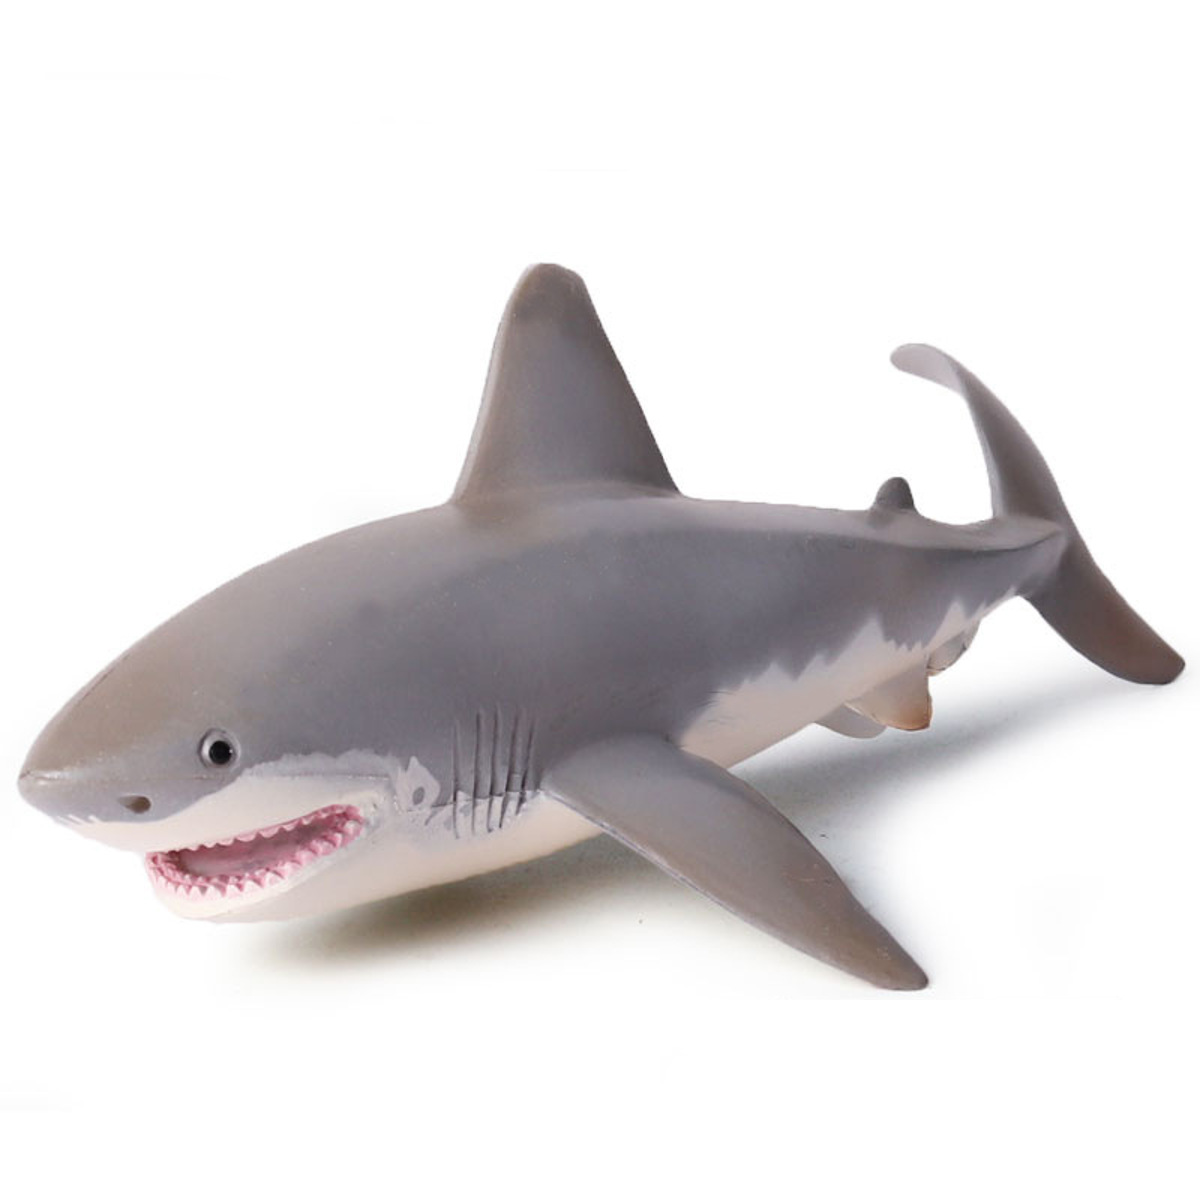 

ПВХ Белая акула Модели Игрушки Ocean Sea Sealife Животная фигура Дети Дети Подарок